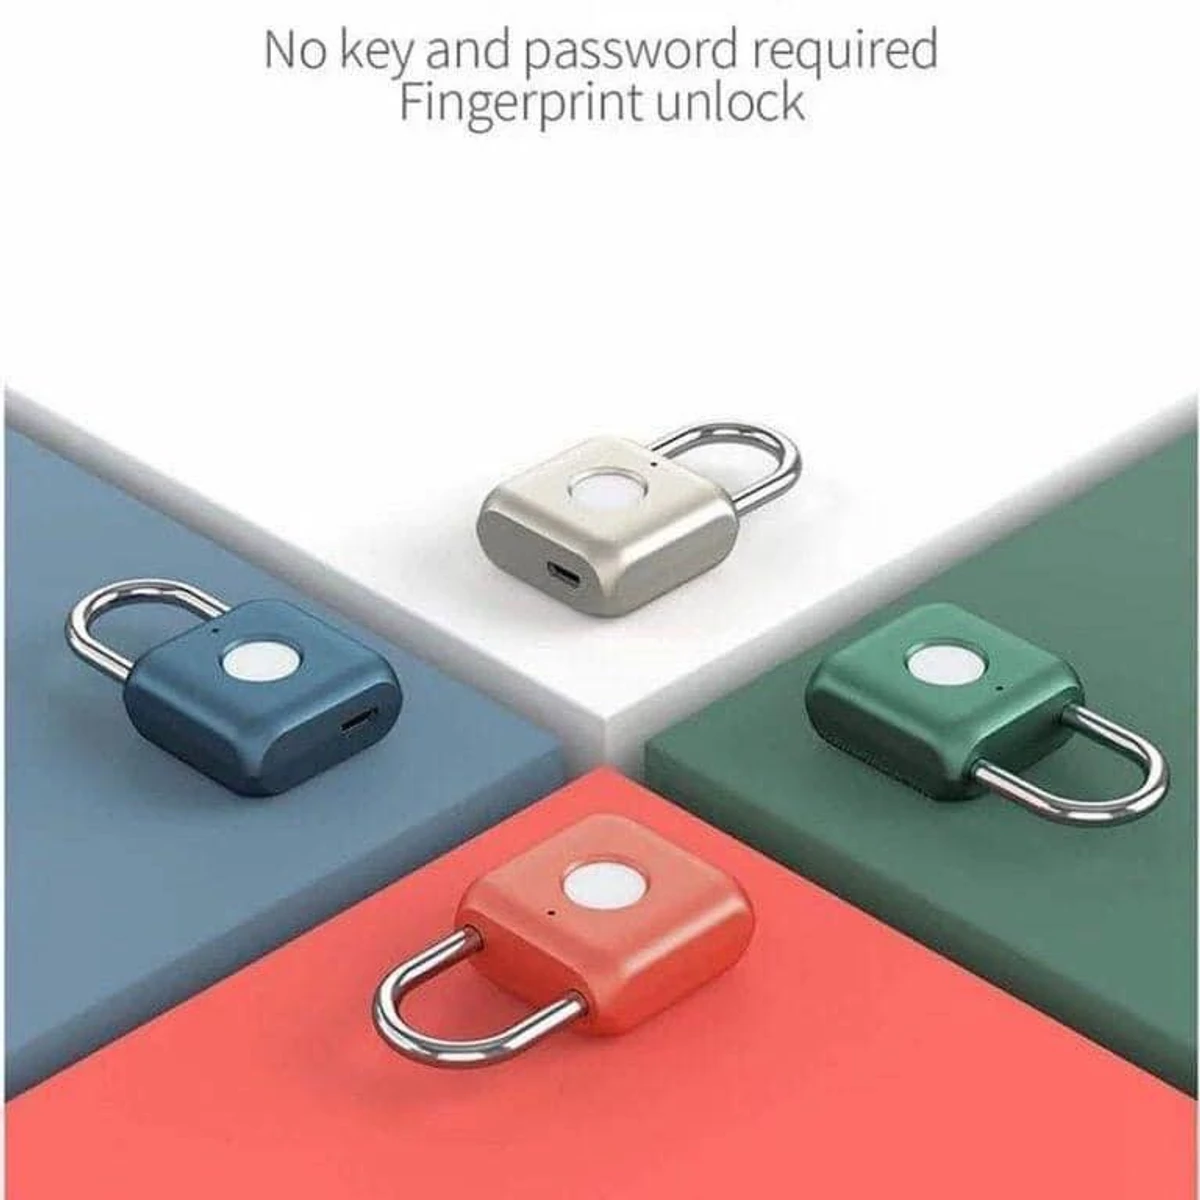 No key and Pass ward required Fingerprint unlock